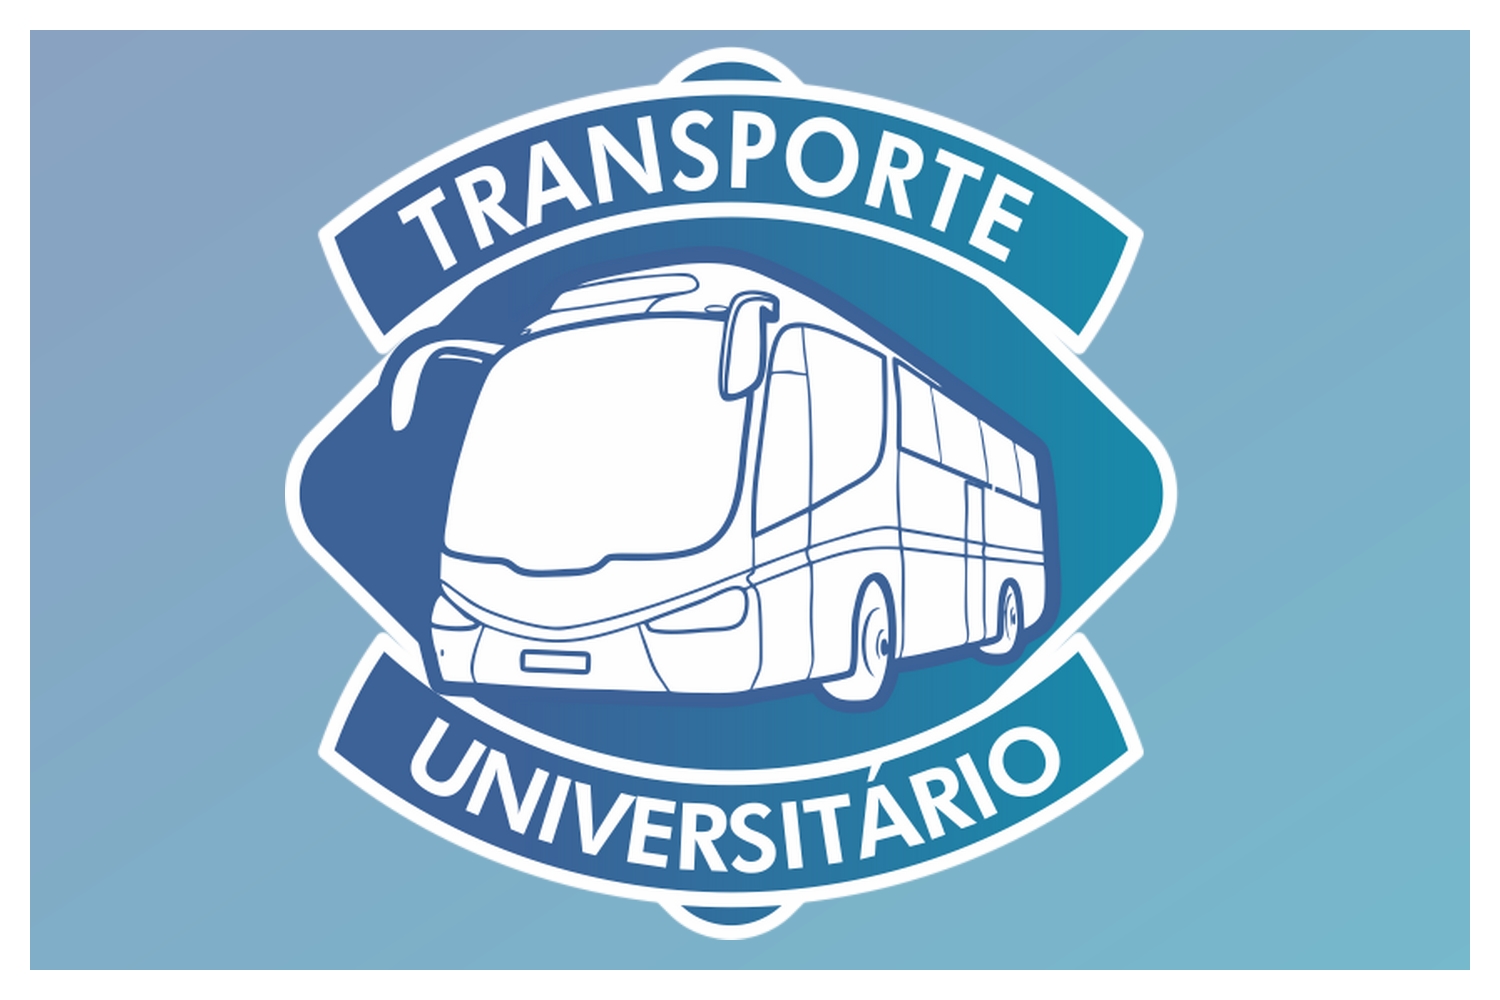 Cadastro do Transporte Universitário começa hoje em Itapema